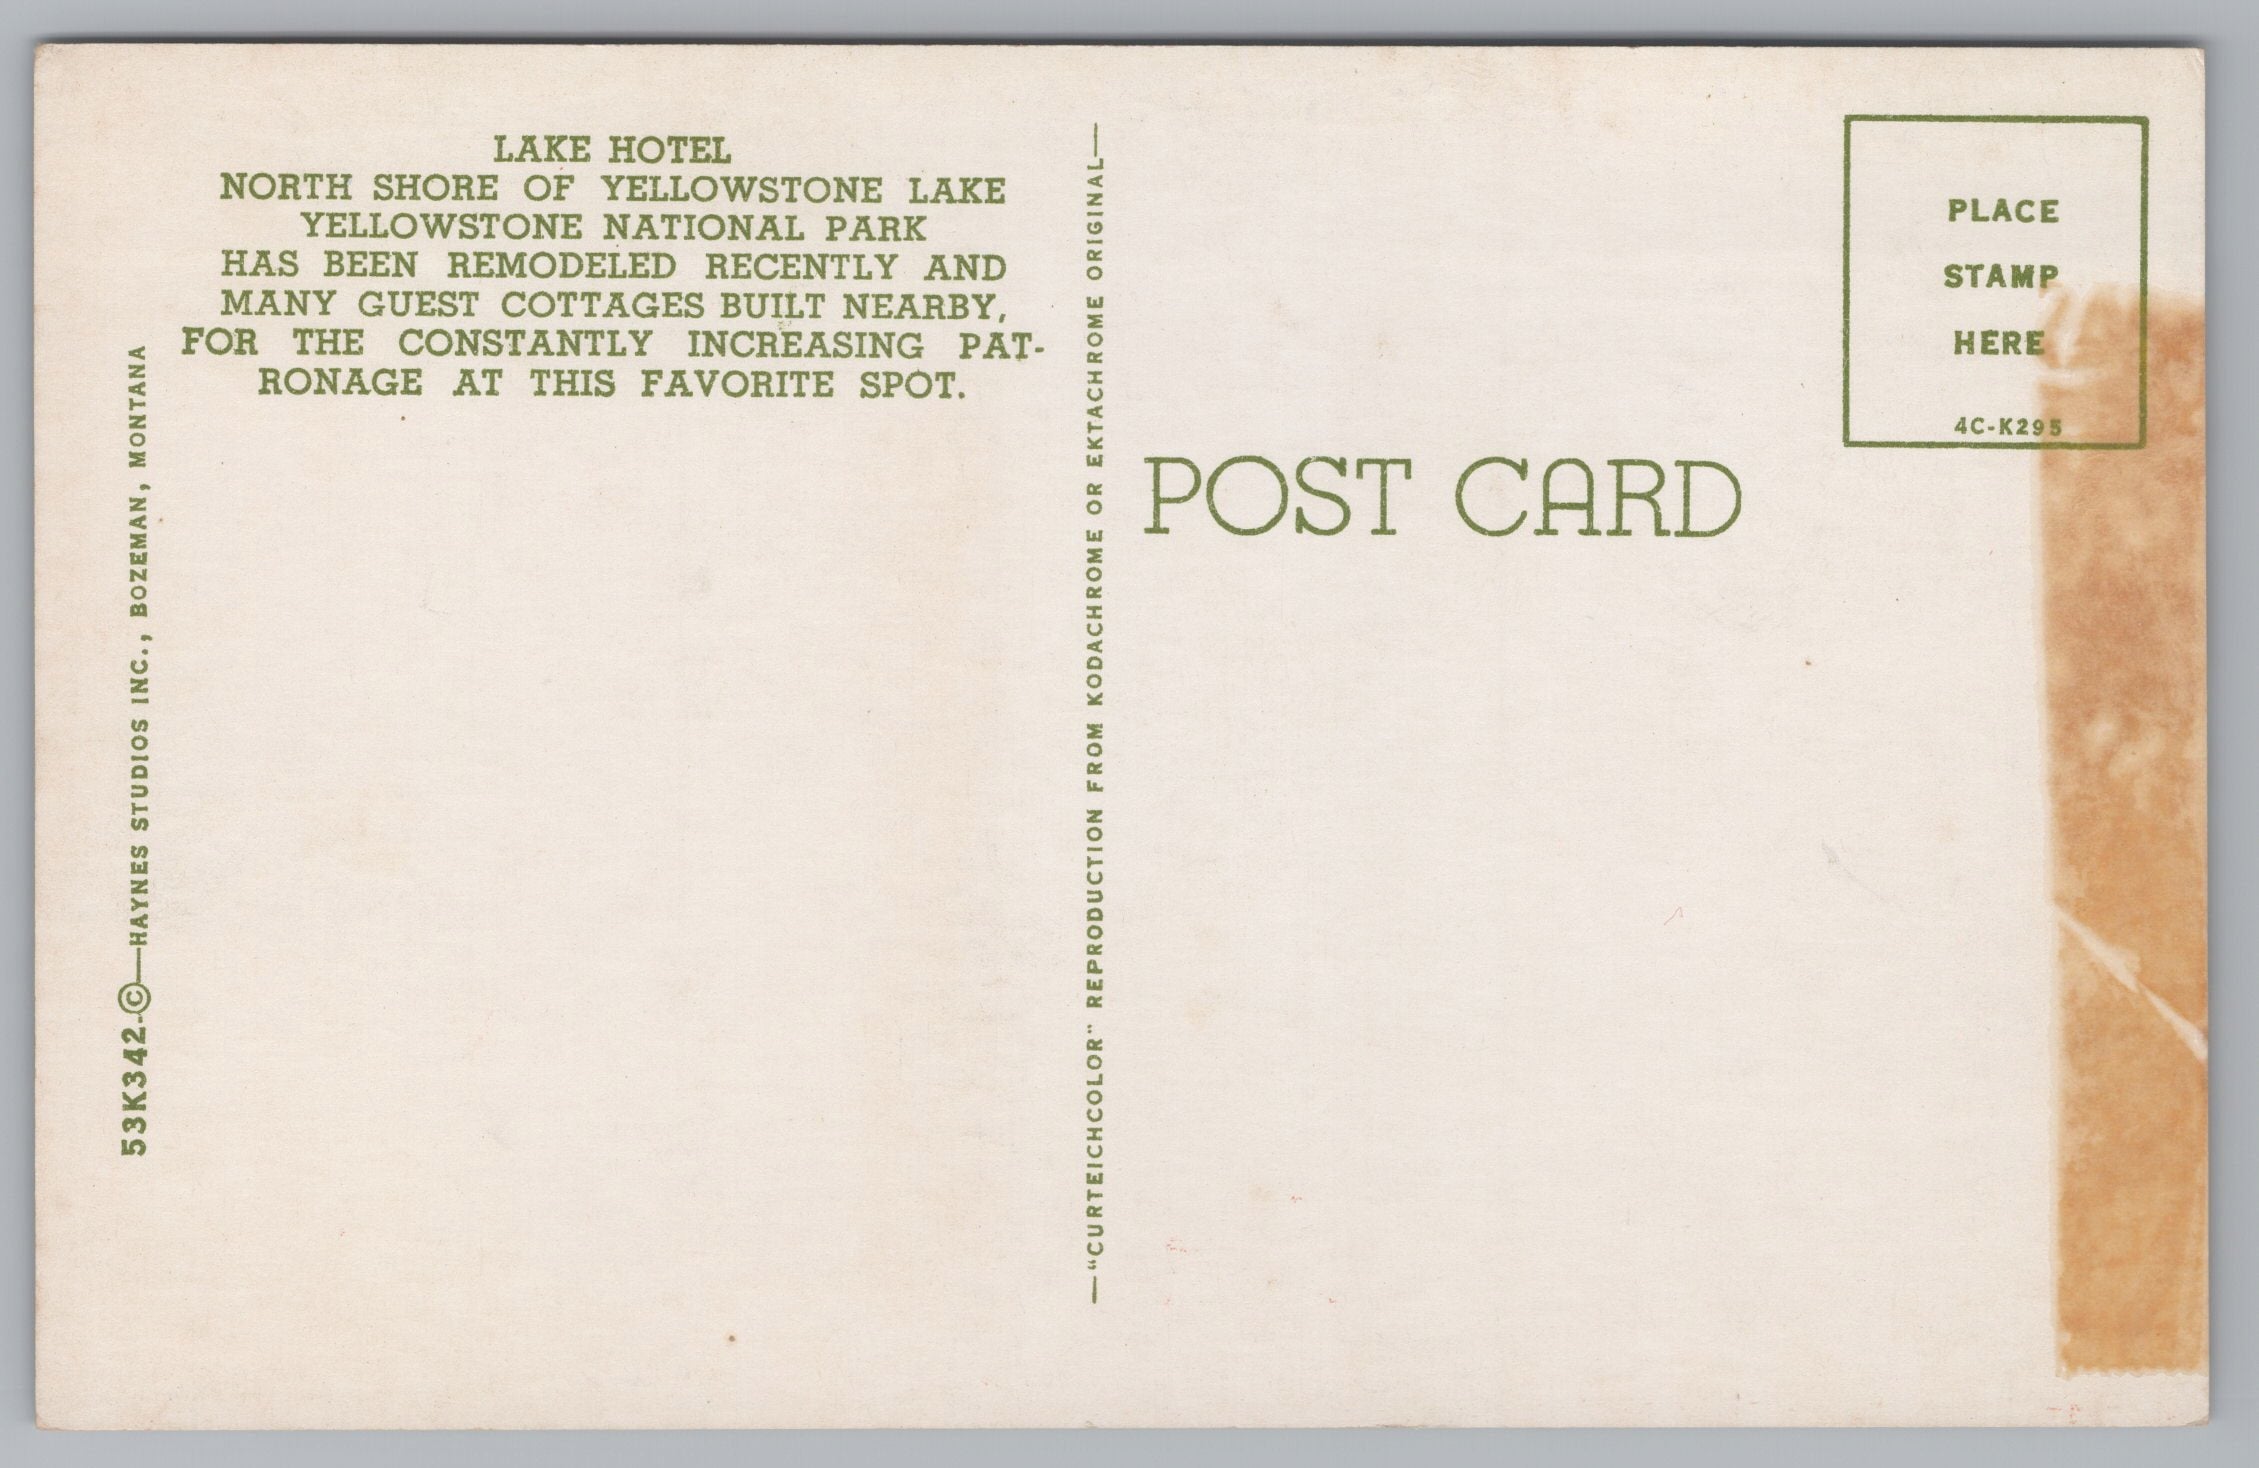 Lake Motel, North Shore Of Yellowstone Lake, California, USA, Vintage Post Card.